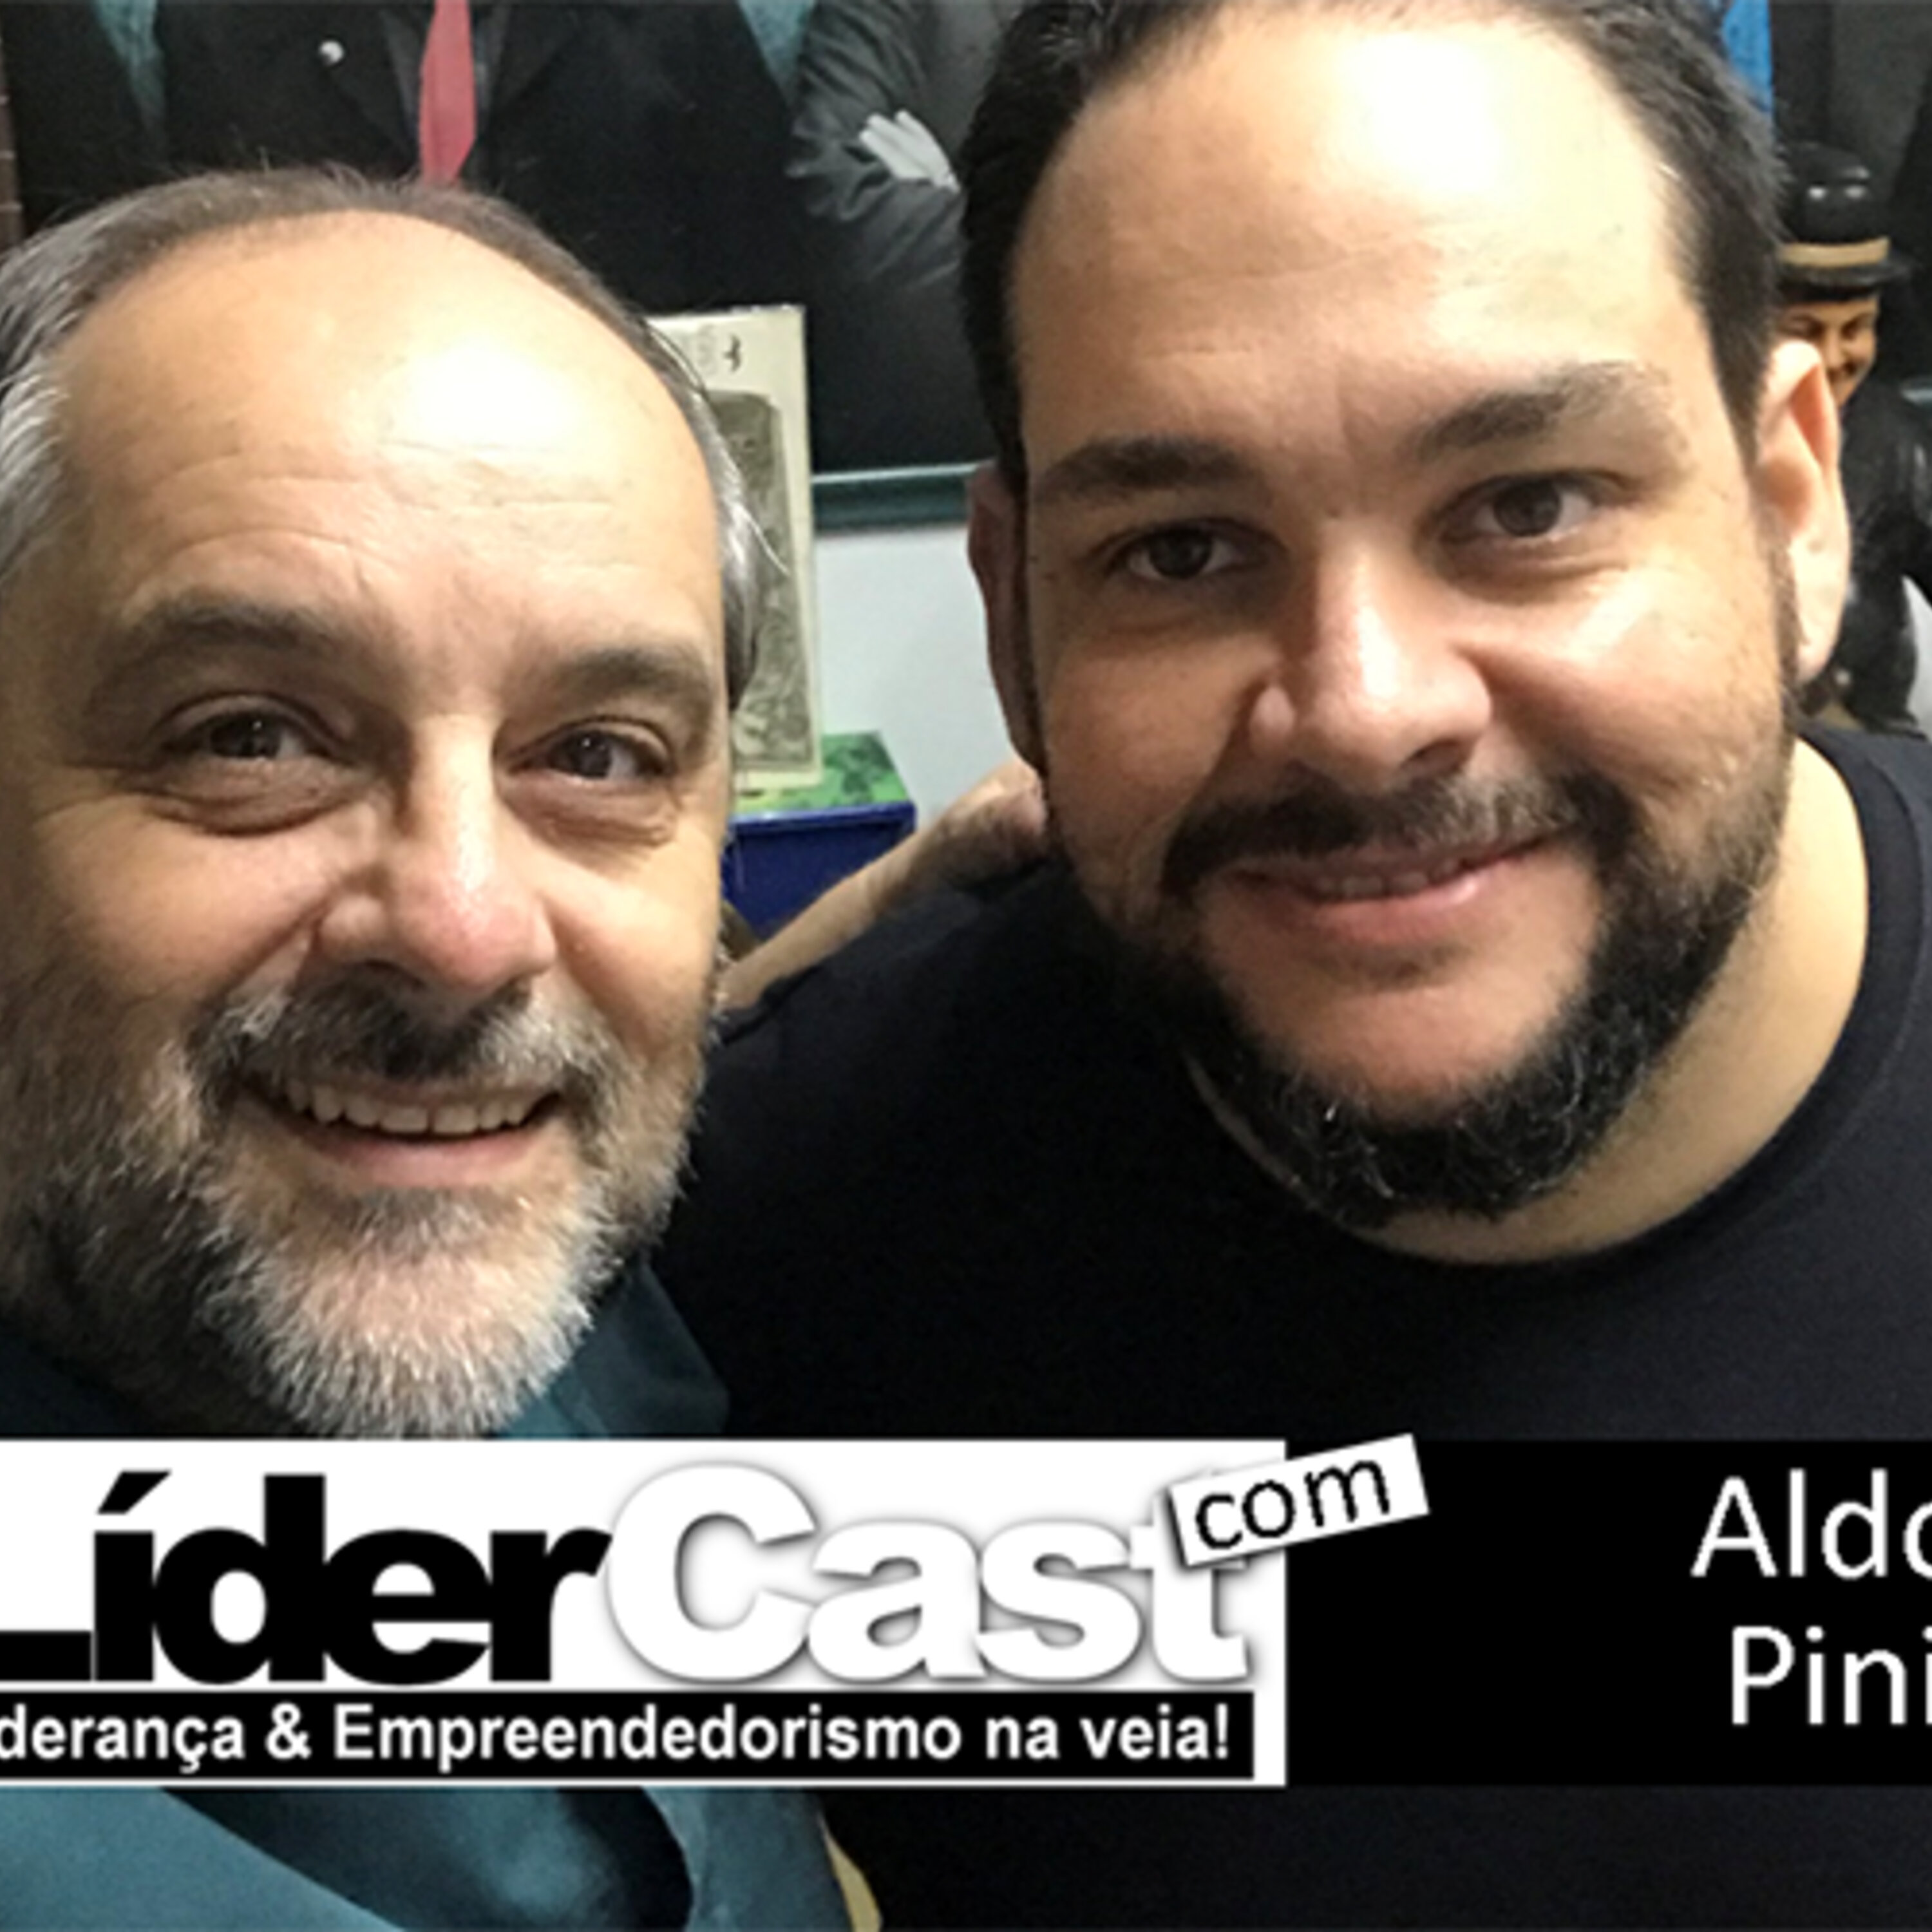 LíderCast 162 – Aldo Pini